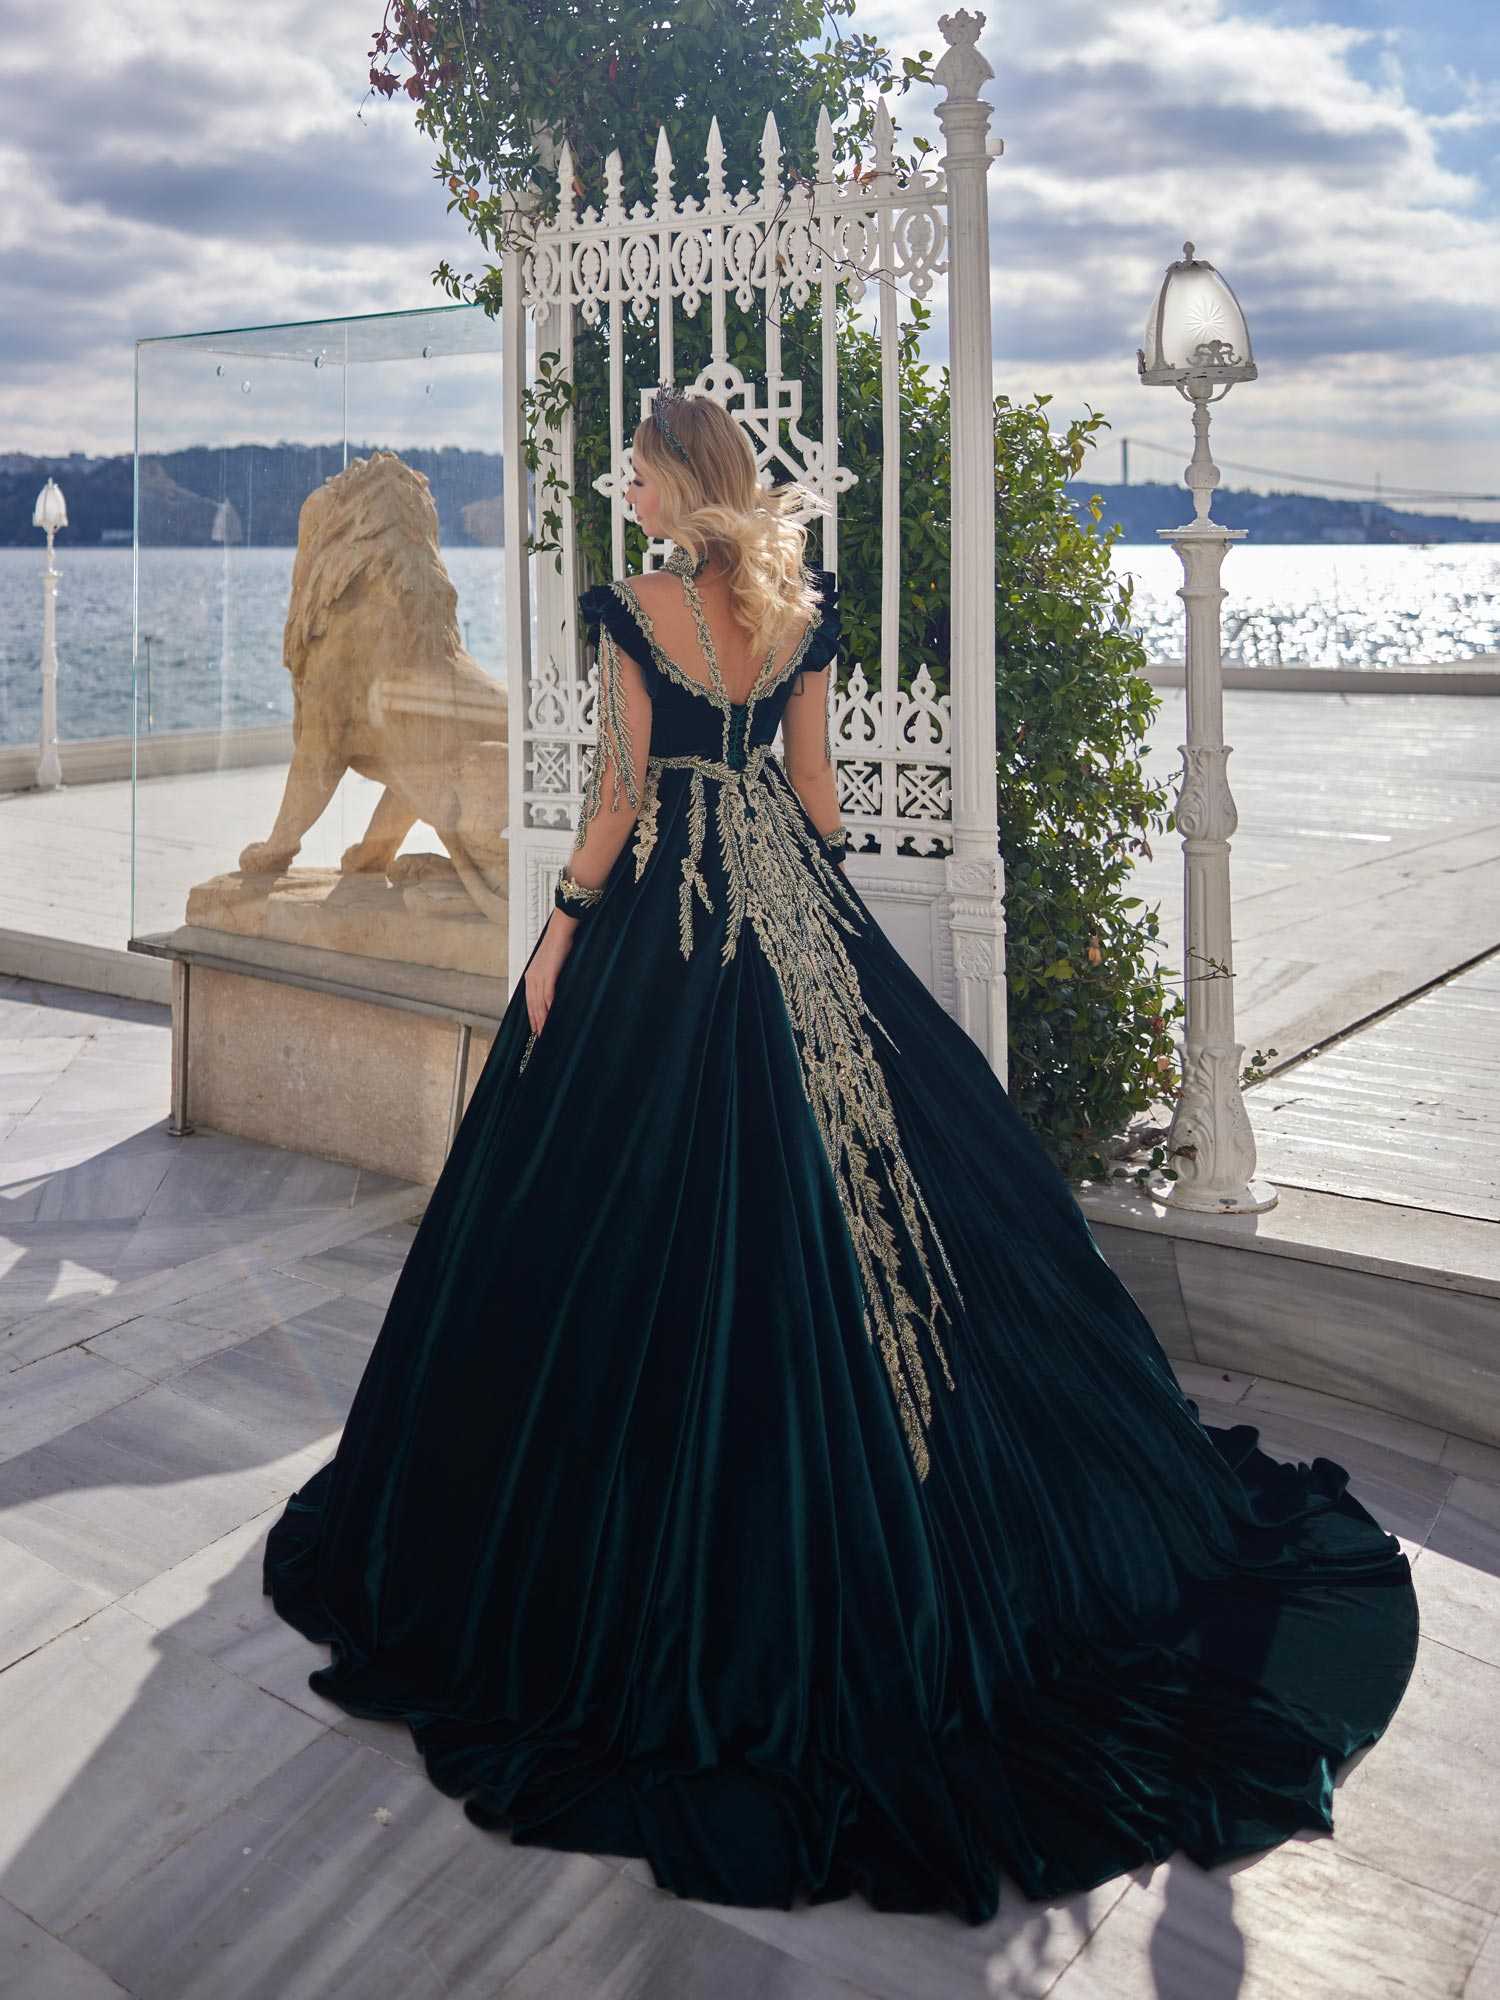 Plunging Neckline Designer Lace Ball Gown Wedding Dress - VQ